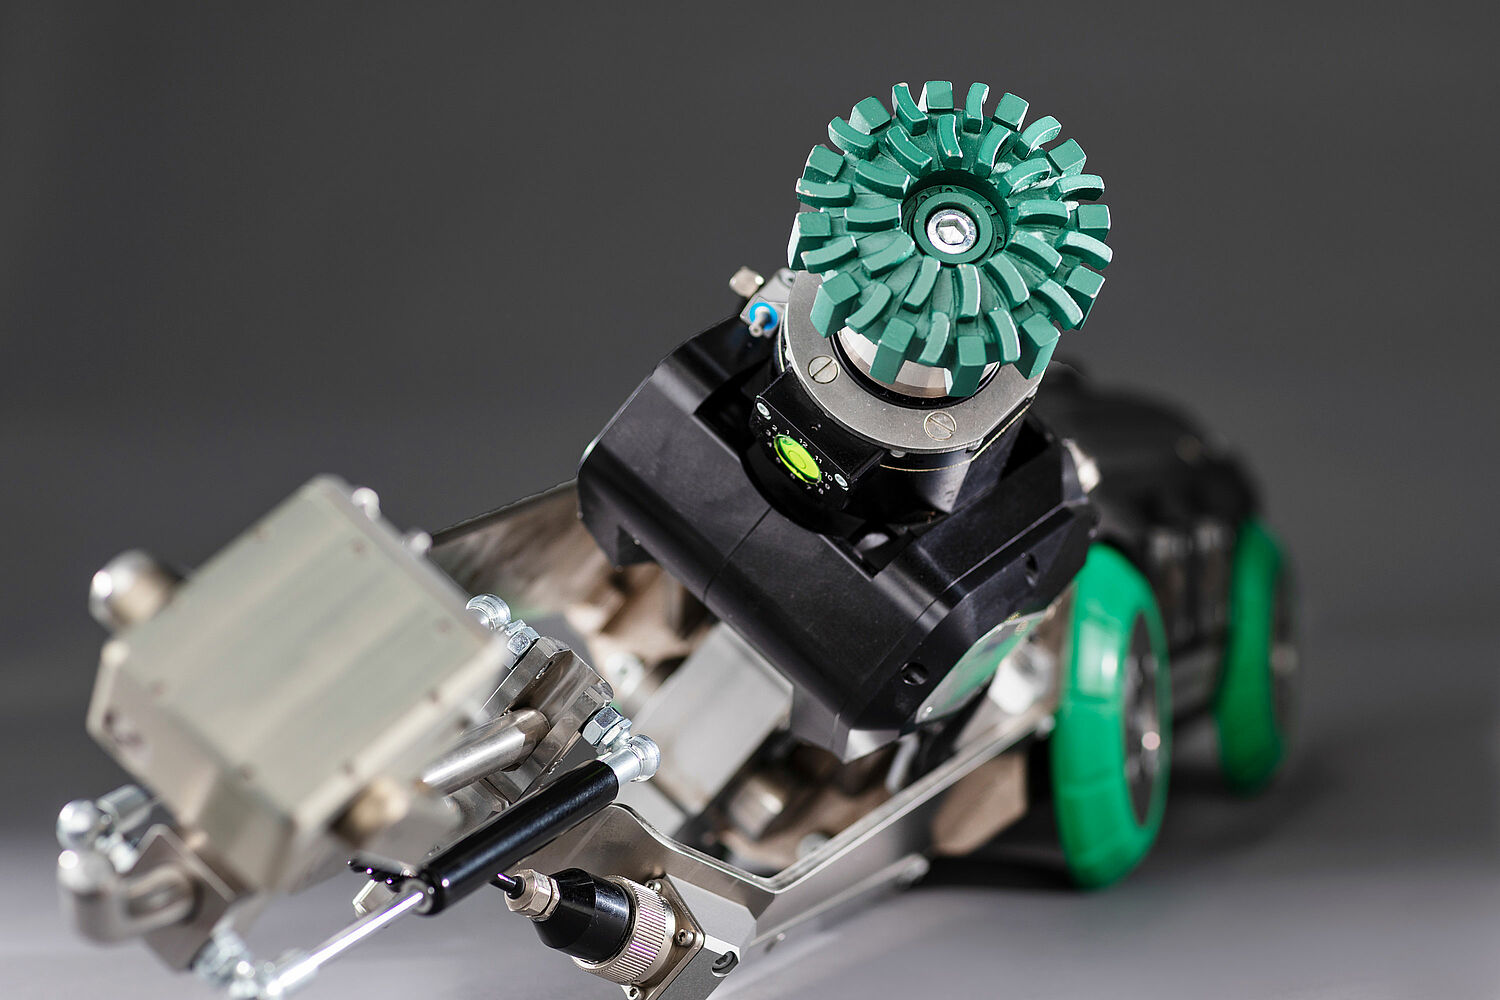 Motori DC-Servomotori brushless di Faulhaber per l'ispezione robotizzata pipetronics